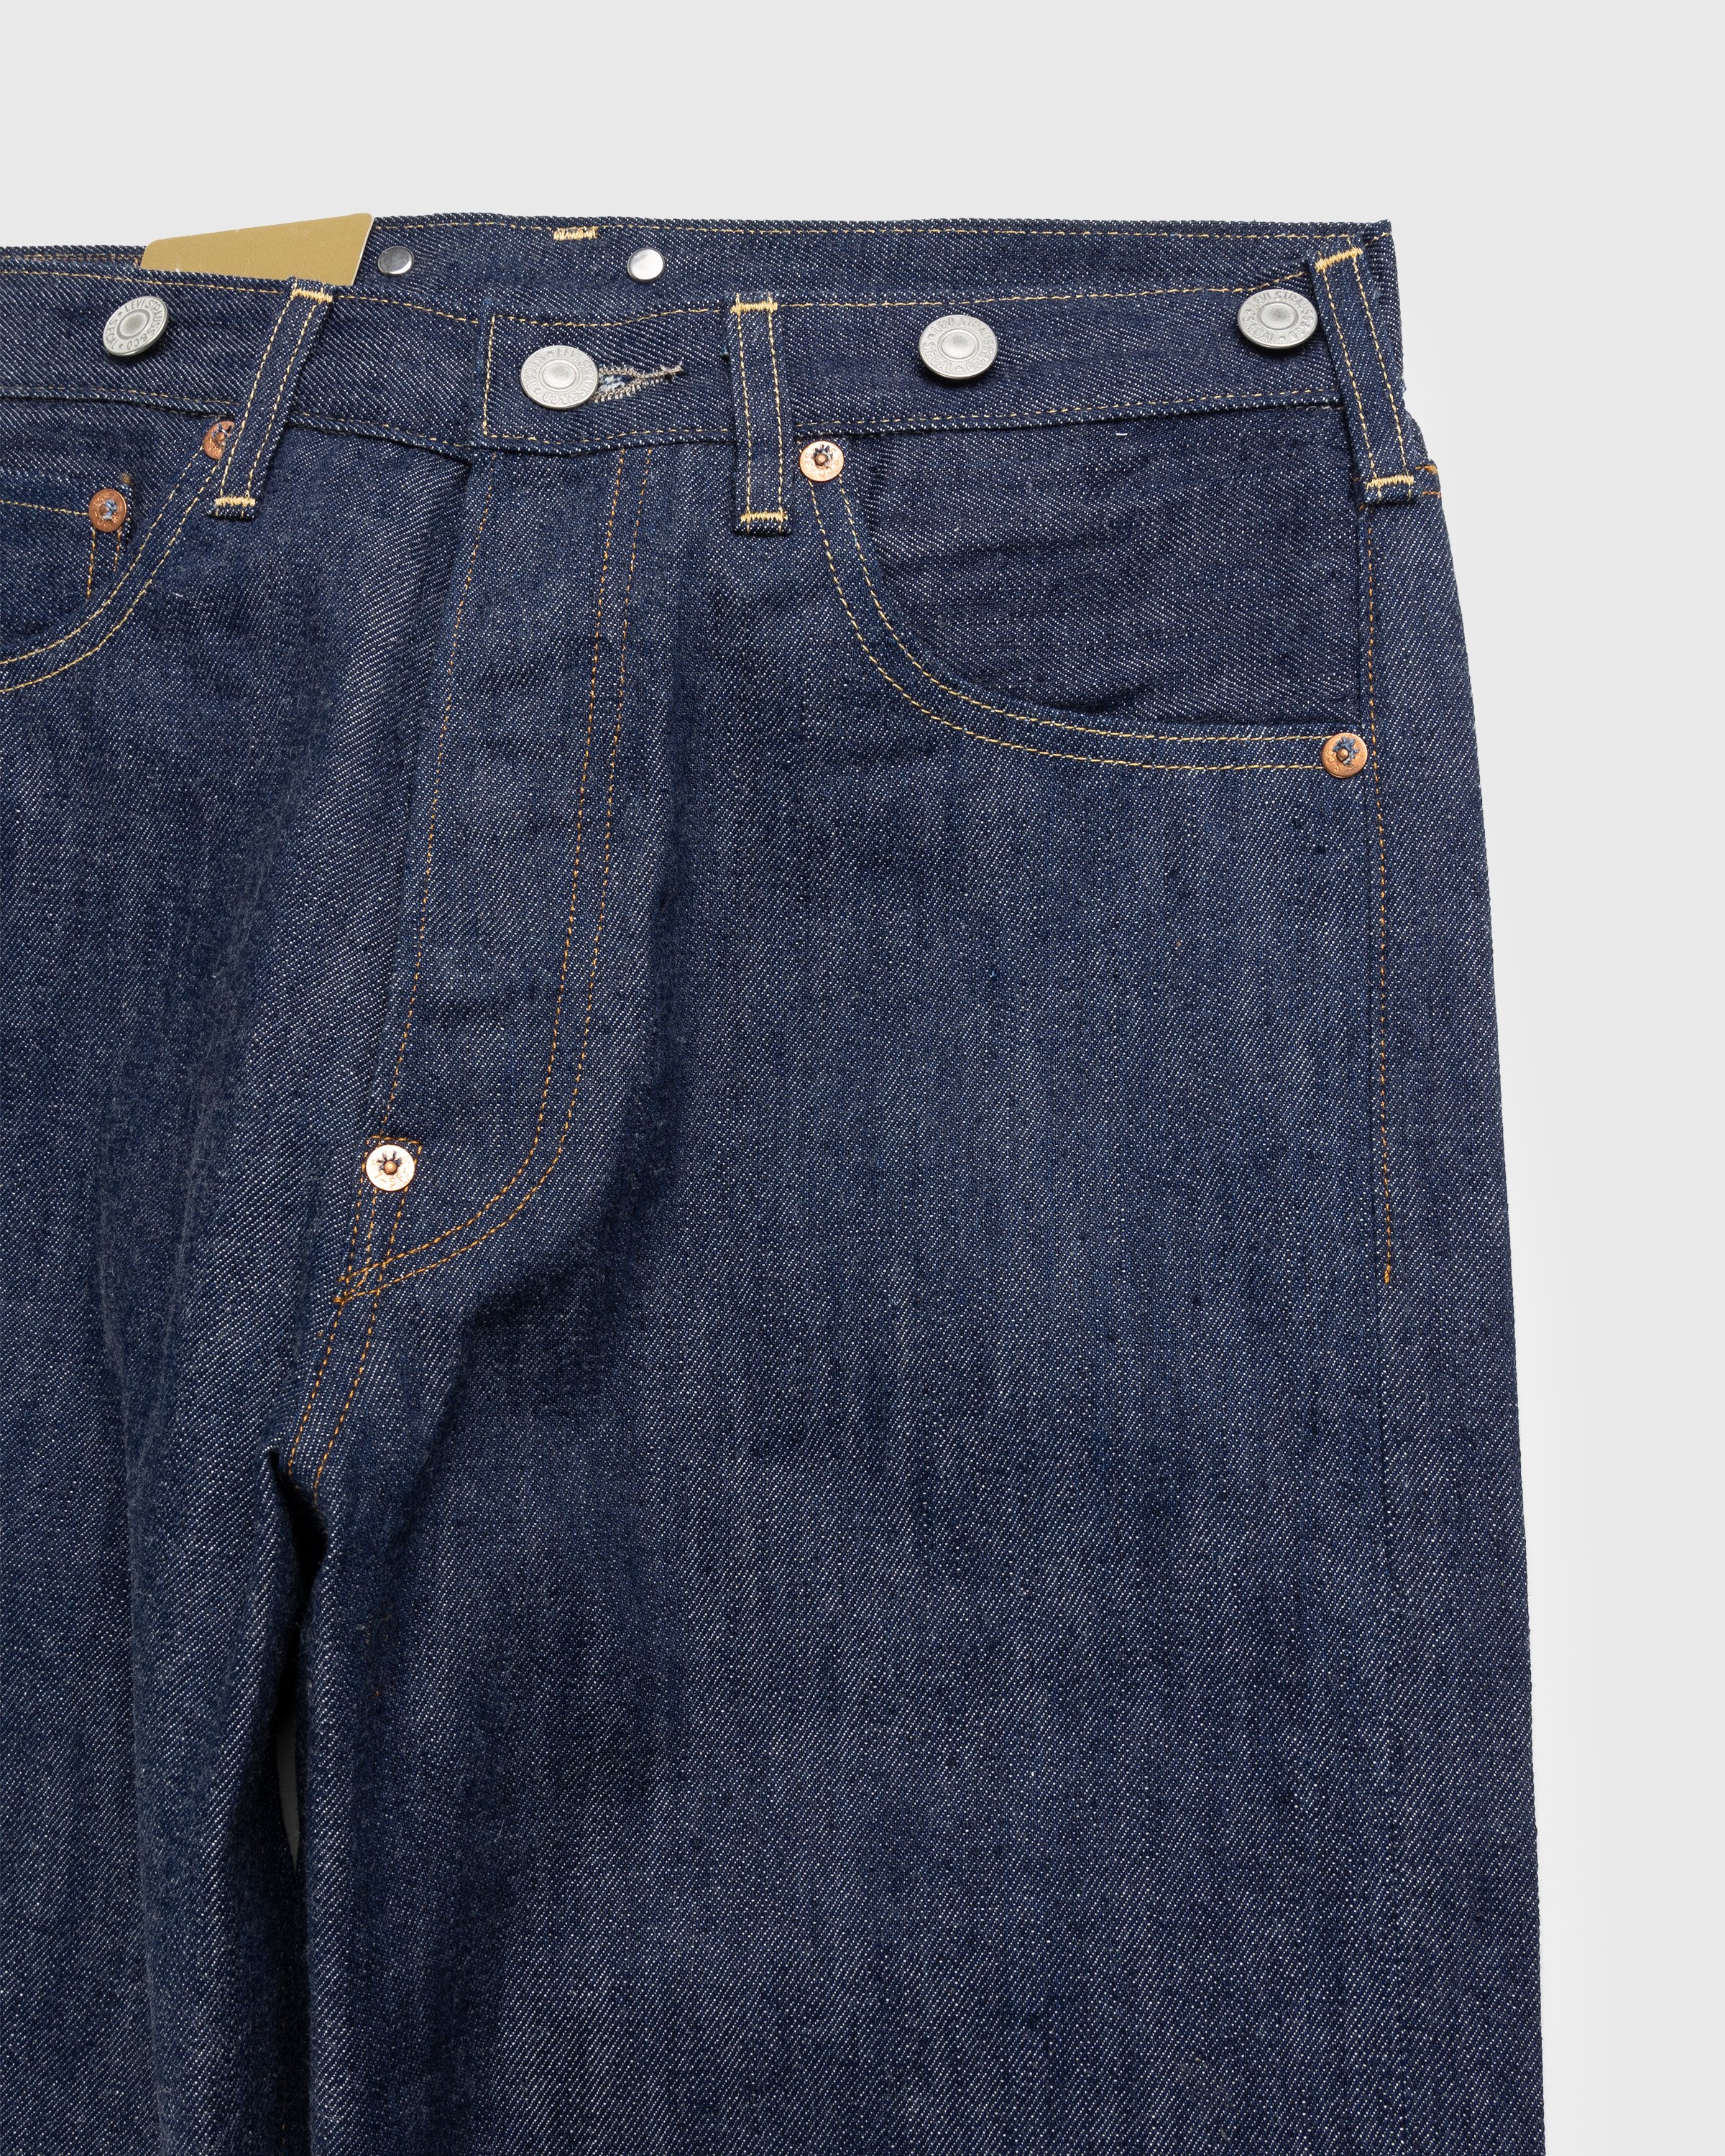 Levi's - 1922 501 Jeans Dark Indigo Flat Finish - Clothing - Blue - Image 6